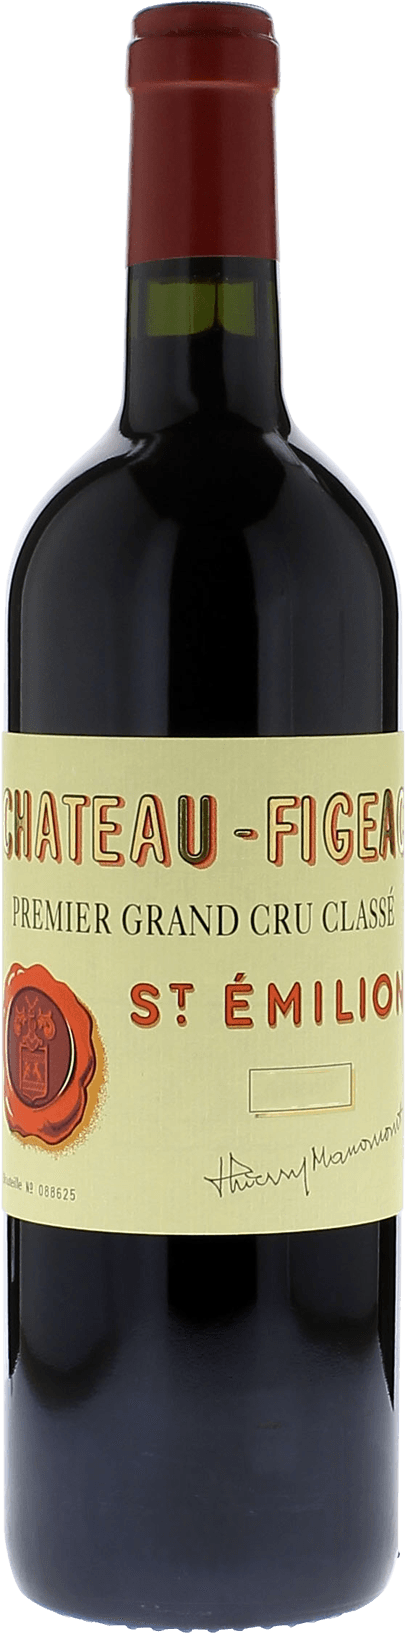 Figeac (ex chteau 2021) 2010 1er Grand cru class Saint-Emilion, Bordeaux rouge